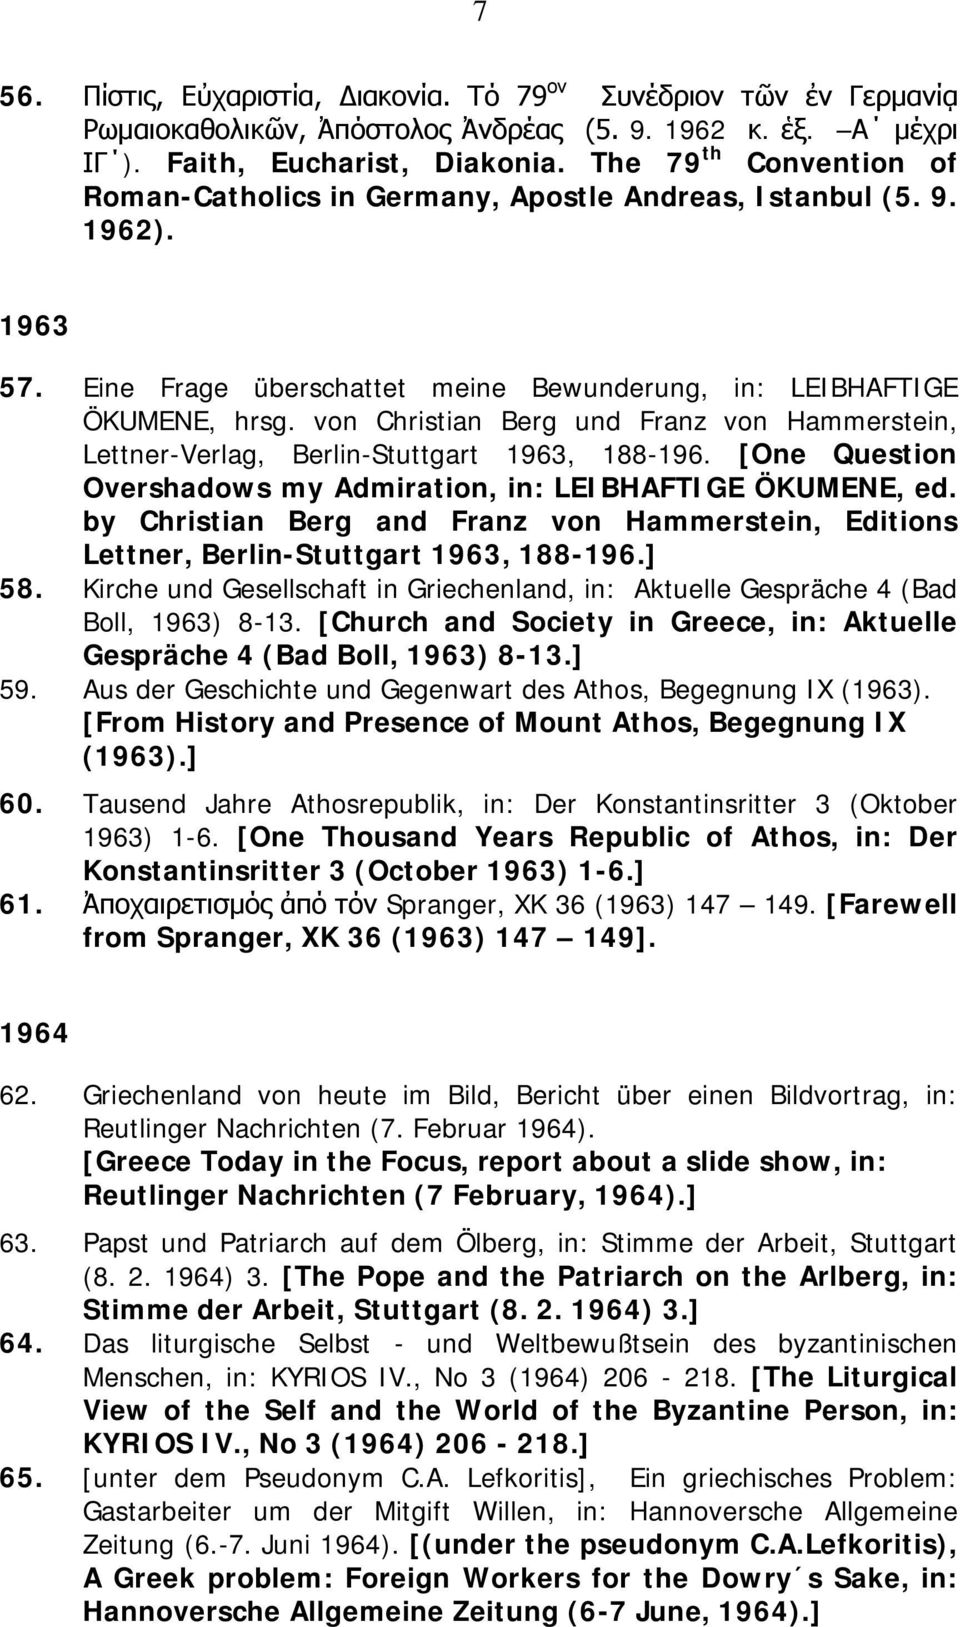 von Christian Berg und Franz von Hammerstein, Lettner-Verlag, Berlin-Stuttgart 1963, 188-196. [One Question Overshadows my Admiration, in: LEIBHAFTIGE ÖKUMENE, ed.